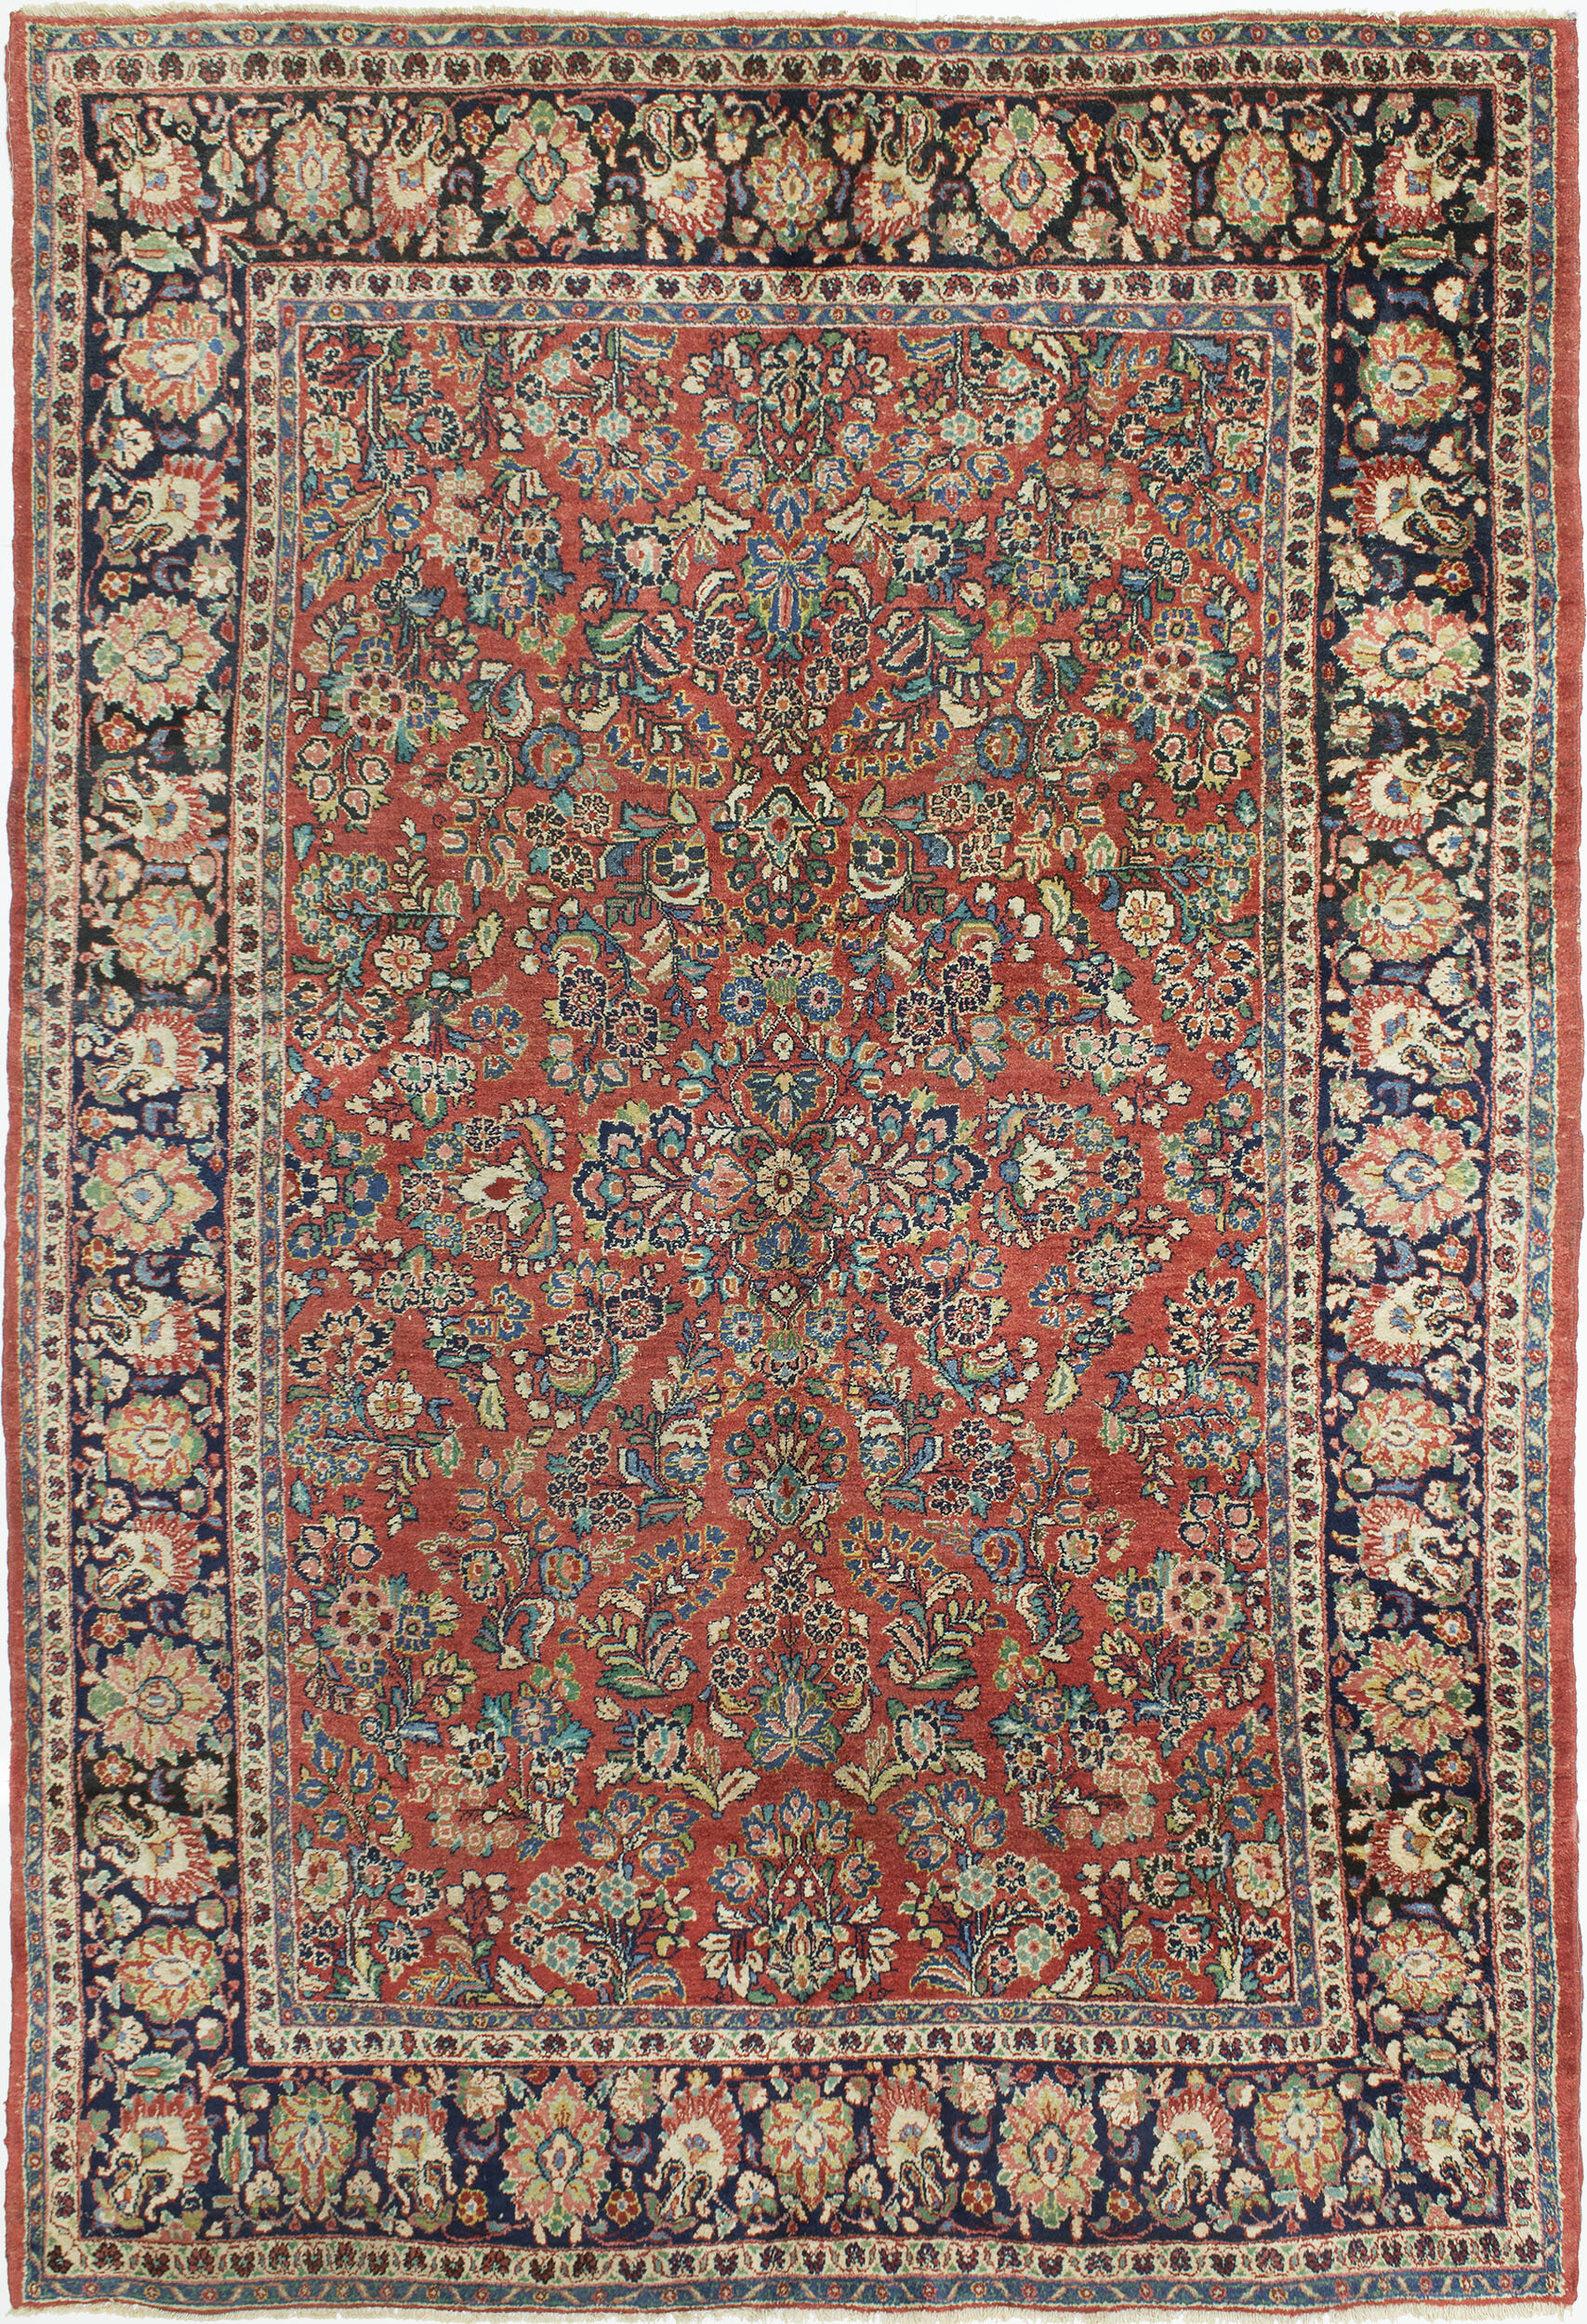 Sarouk Carpet 9' 3" x 6' 5" 